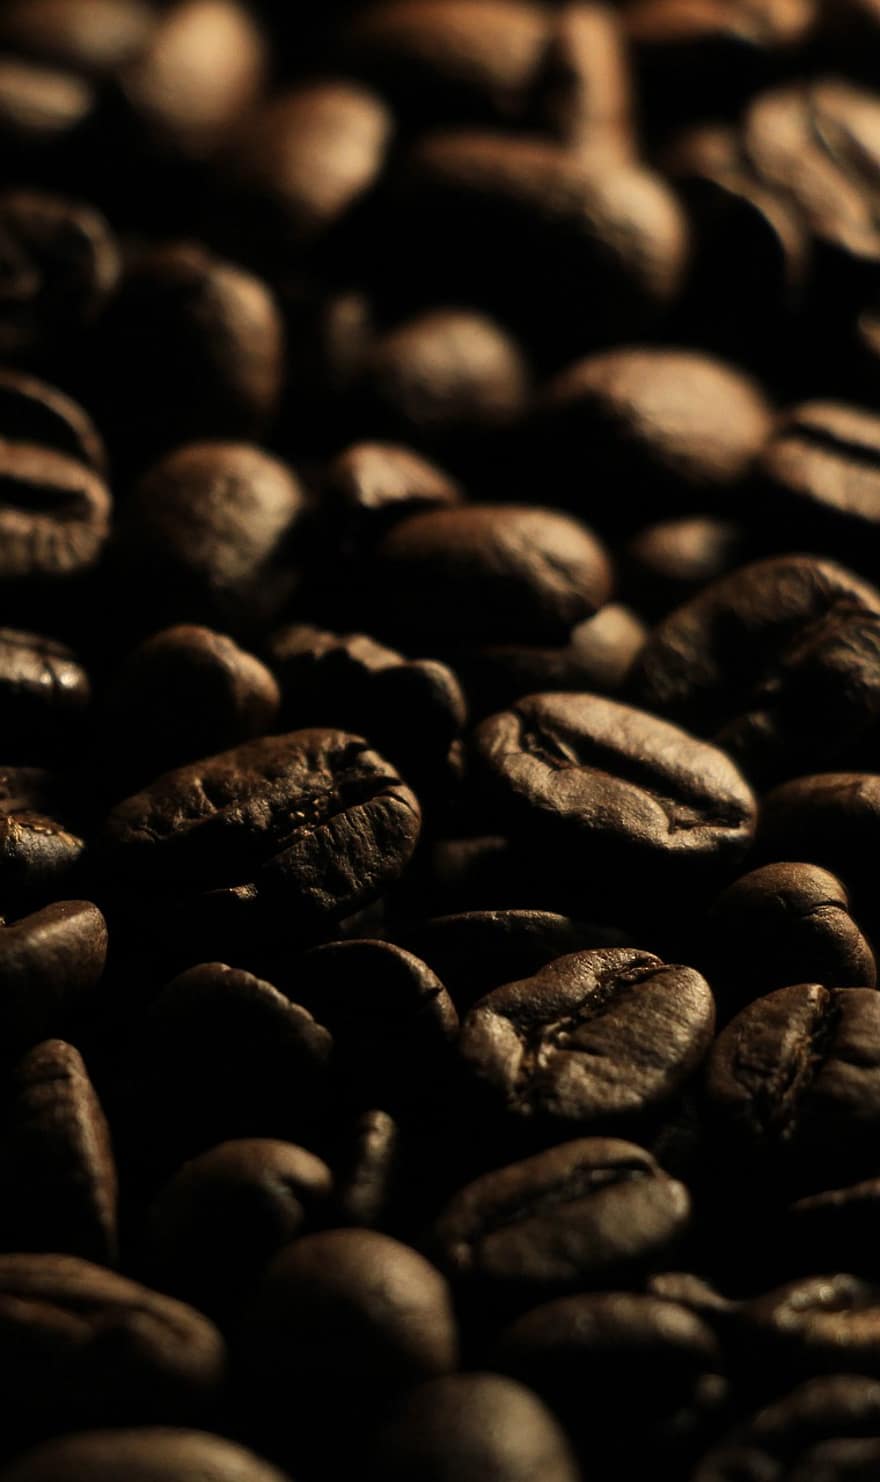 ziarna kawy, kofeina, Kawa, posiew, czarny, drink, zbliżenie, tła, ciemny, fasola, makro